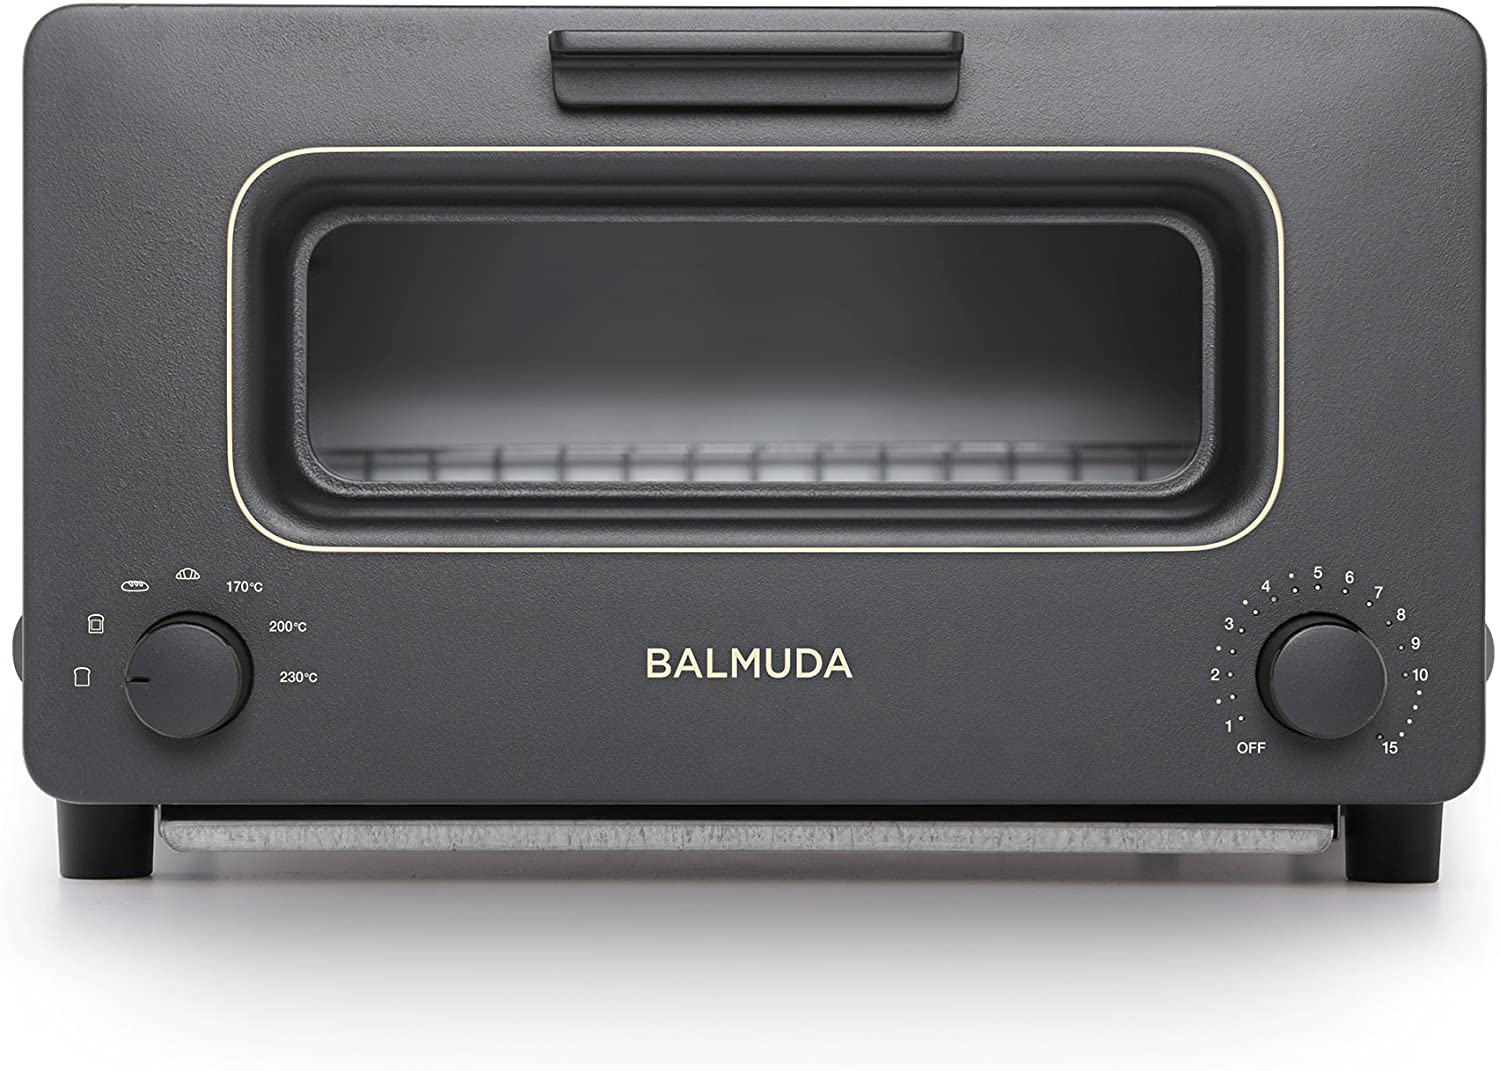 【BALMUDA】スチームオーブントースター BALMUDA The Toaster(ブラック)